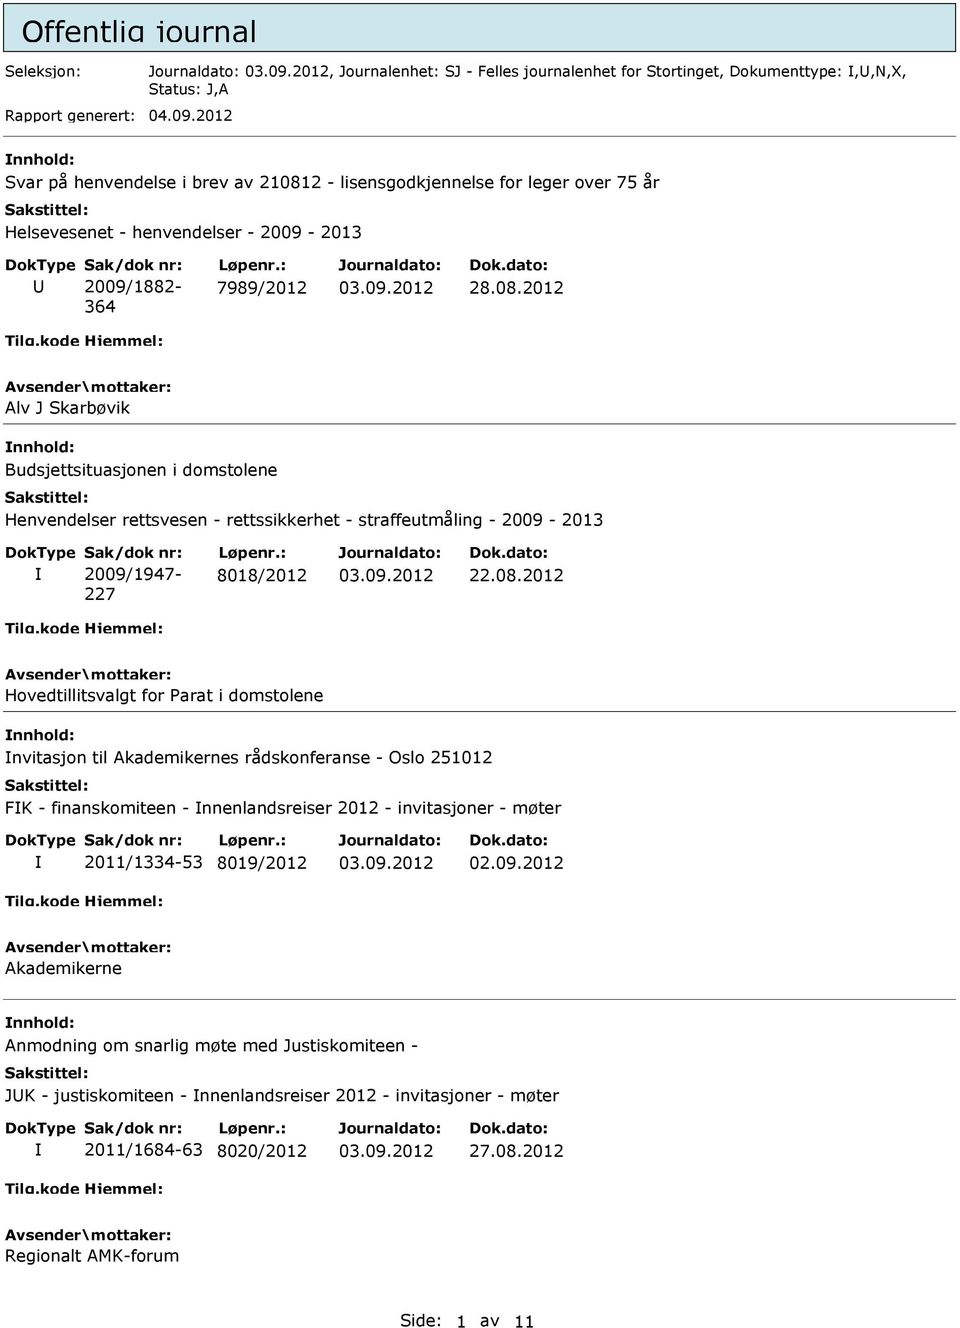 2 - lisensgodkjennelse for leger over 75 år Helsevesenet - henvendelser - 2009-2013 2009/1882-364 7989/2012 28.08.